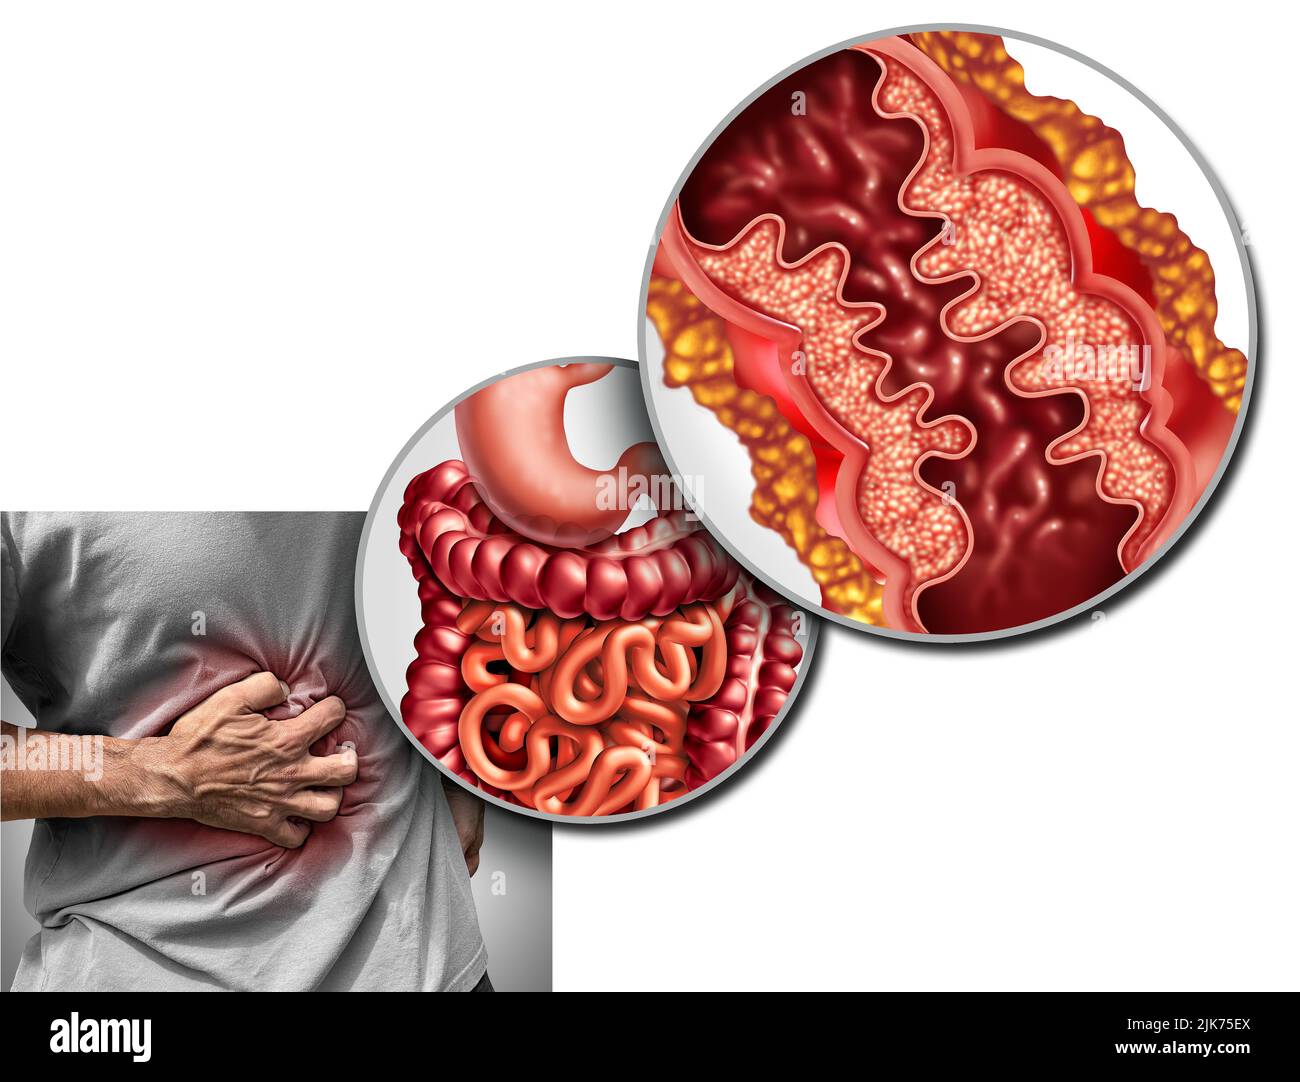 La maladie de Crohn la douleur et le syndrome de Crohn la maladie ou le trouble de crohns comme concept médical avec un gros plan d'un intestin humain avec inflammation. Banque D'Images